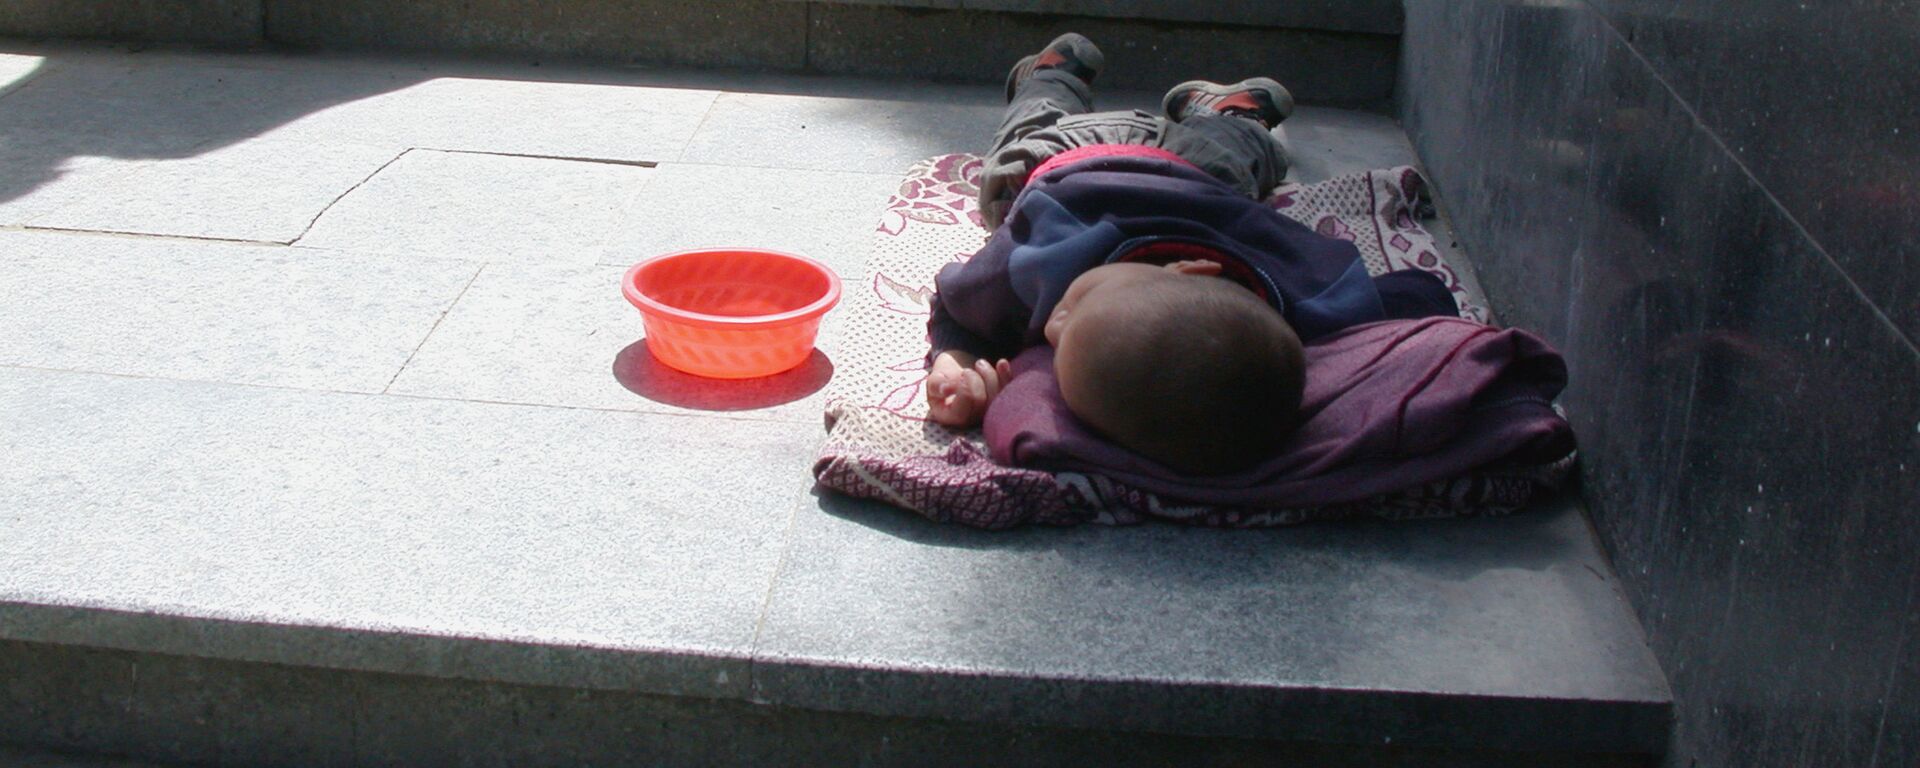 Уличные зарисовки Тбилиси. Бездомный ребенок в переходе. - Sputnik Узбекистан, 1920, 23.01.2020